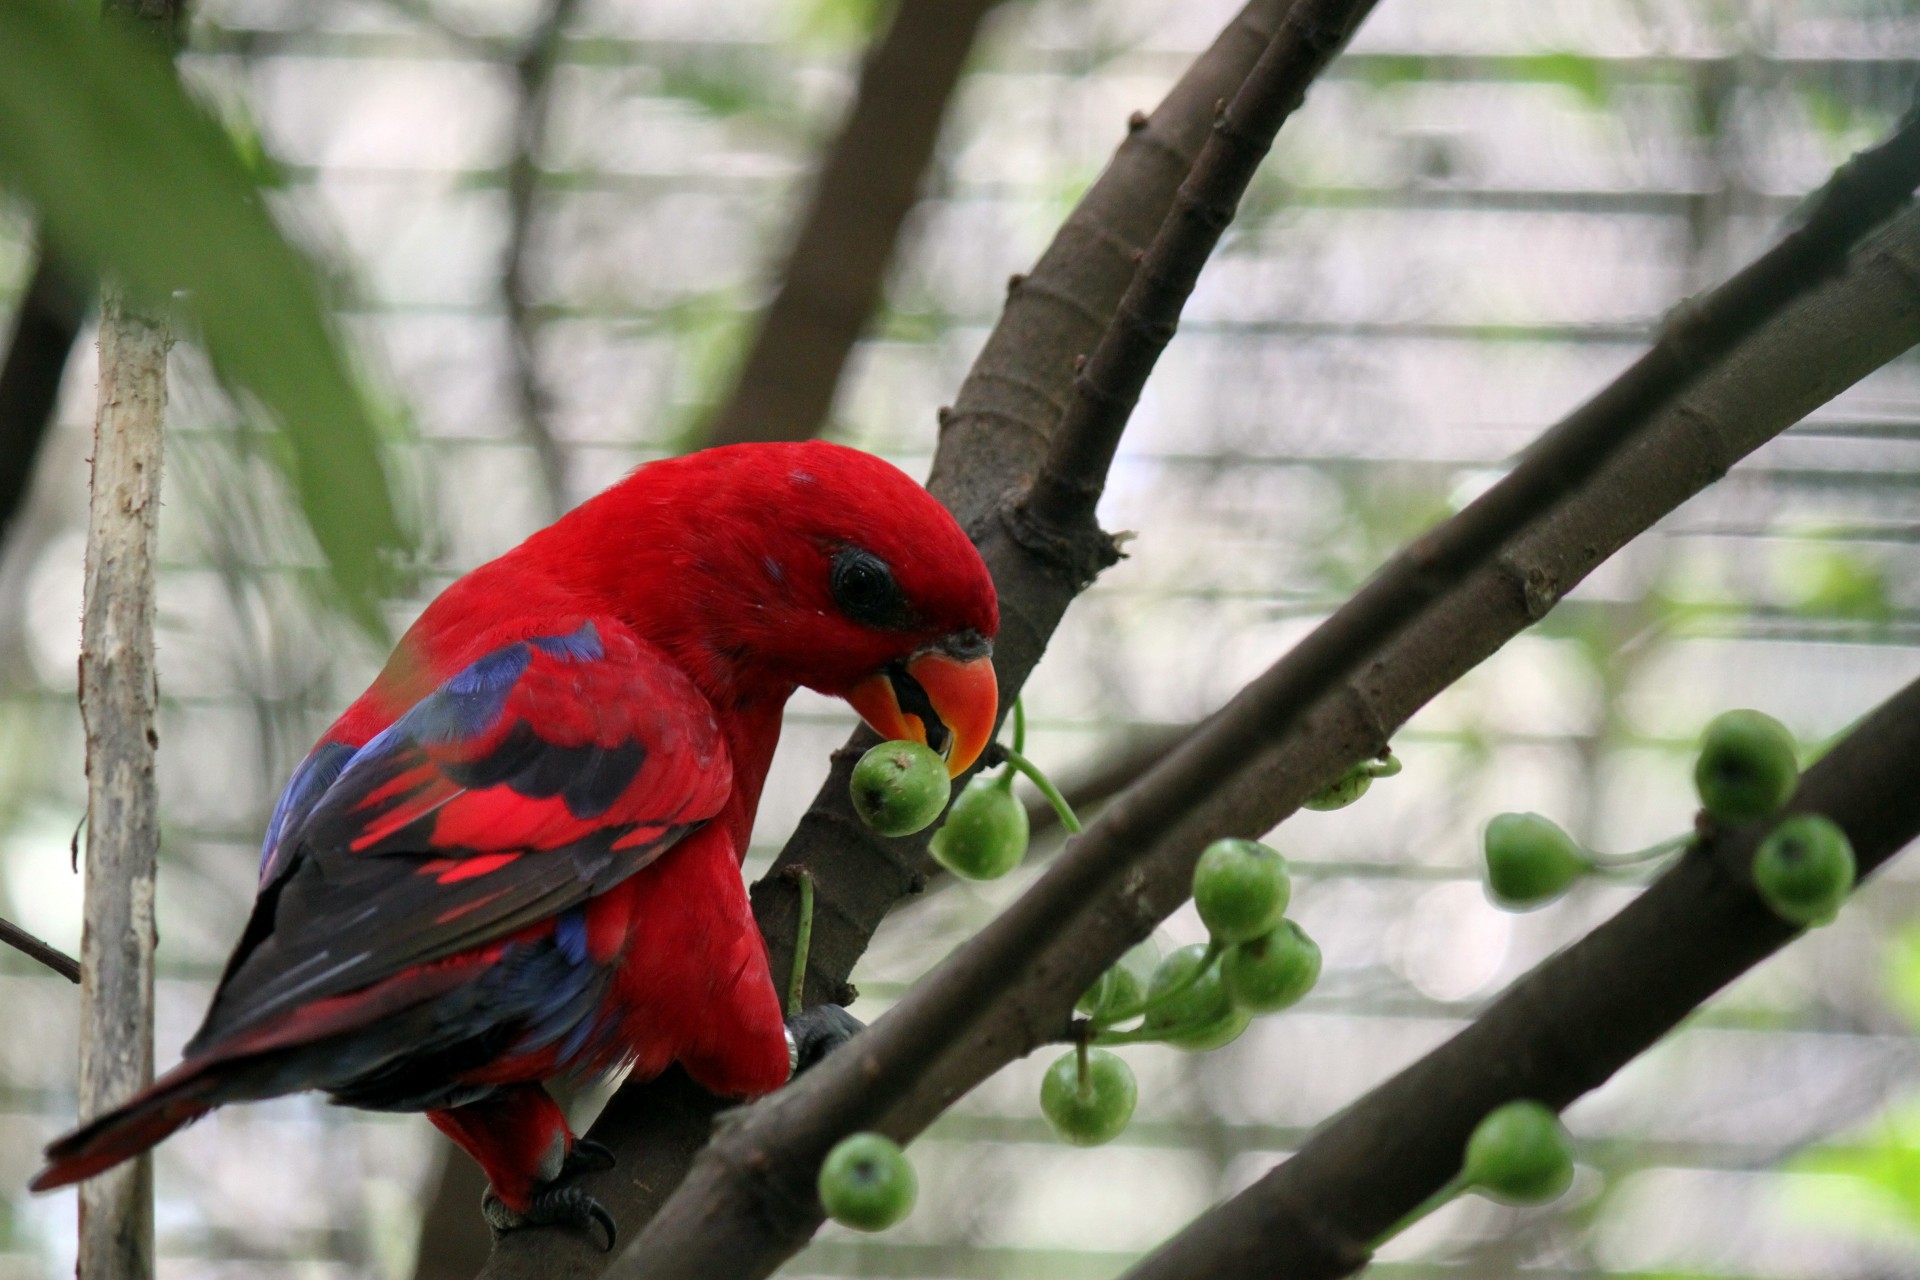 Rode papegaai eten van de vrucht van de